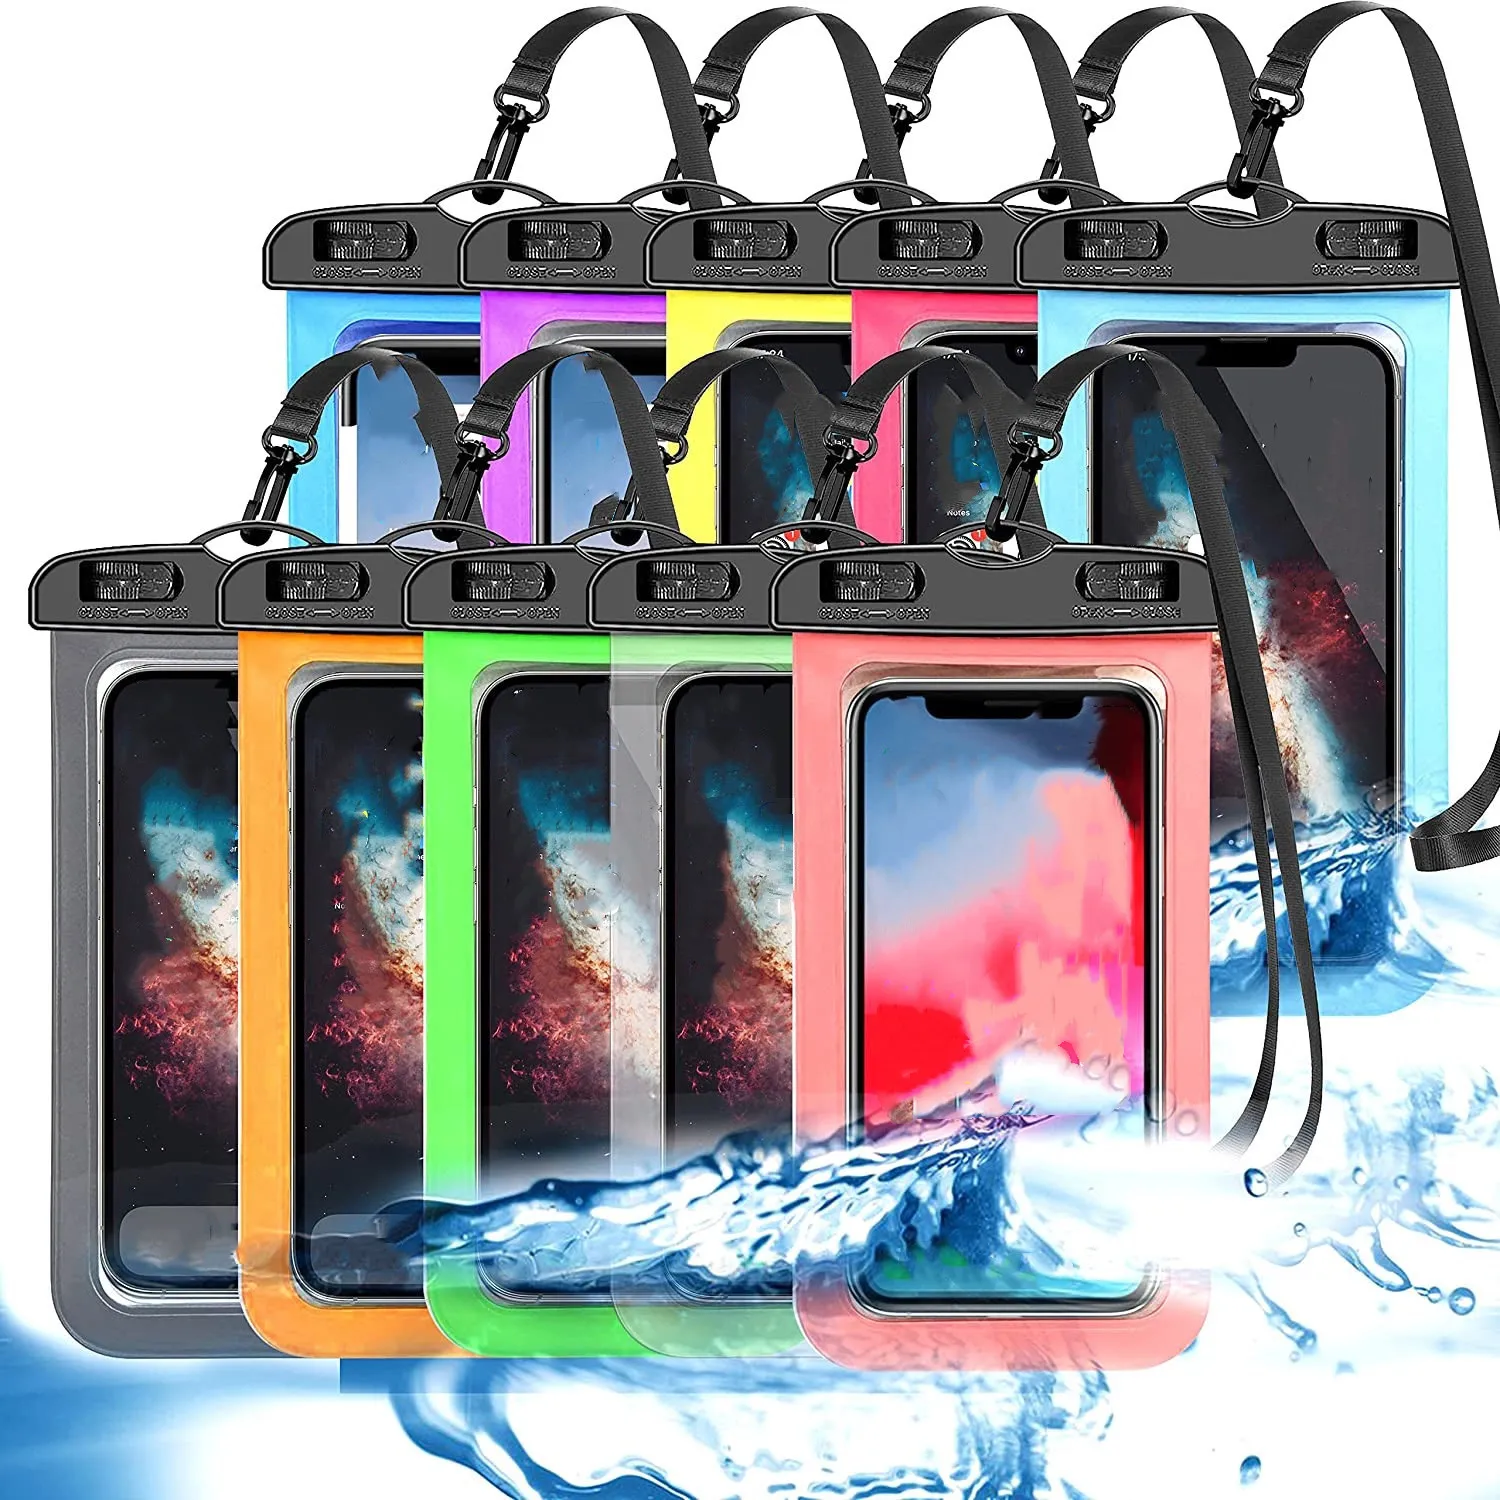 Casos à prova d'água universais bolsa de bolsas secas para celular para celular iphone samsung htc Android Smart Phones